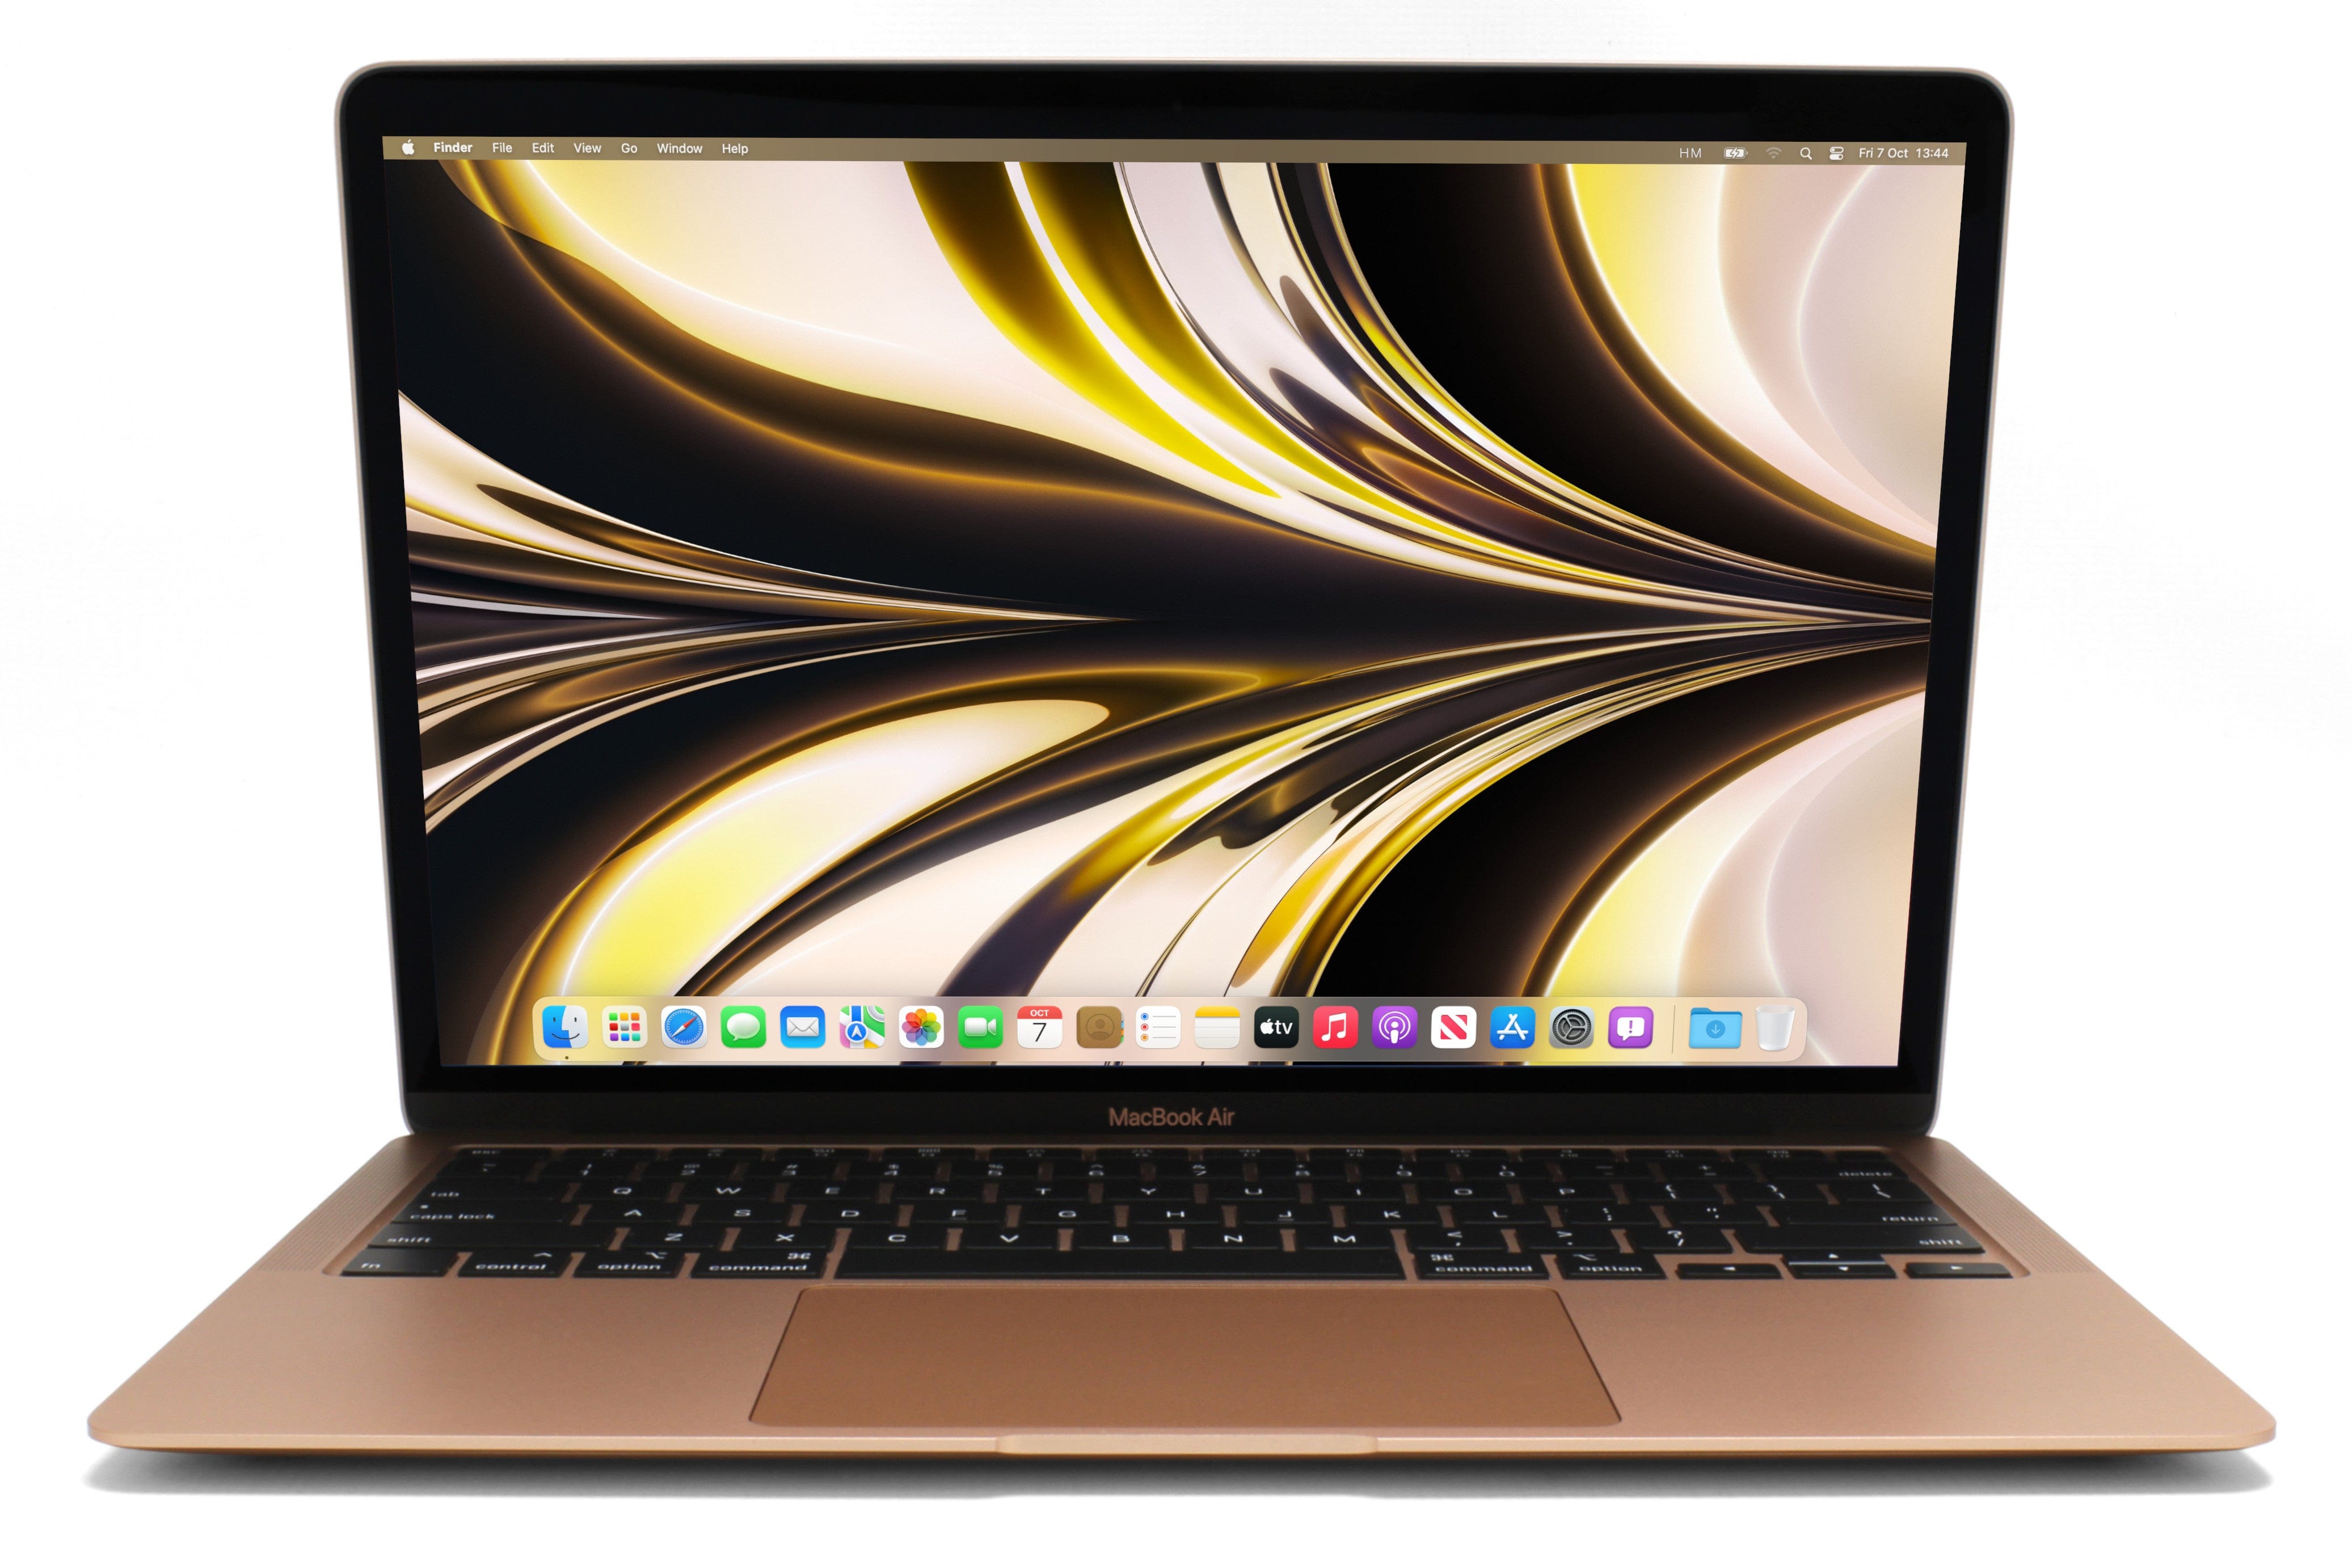 MacBook Air 13-inch M1 (Gold, 2020) - Good